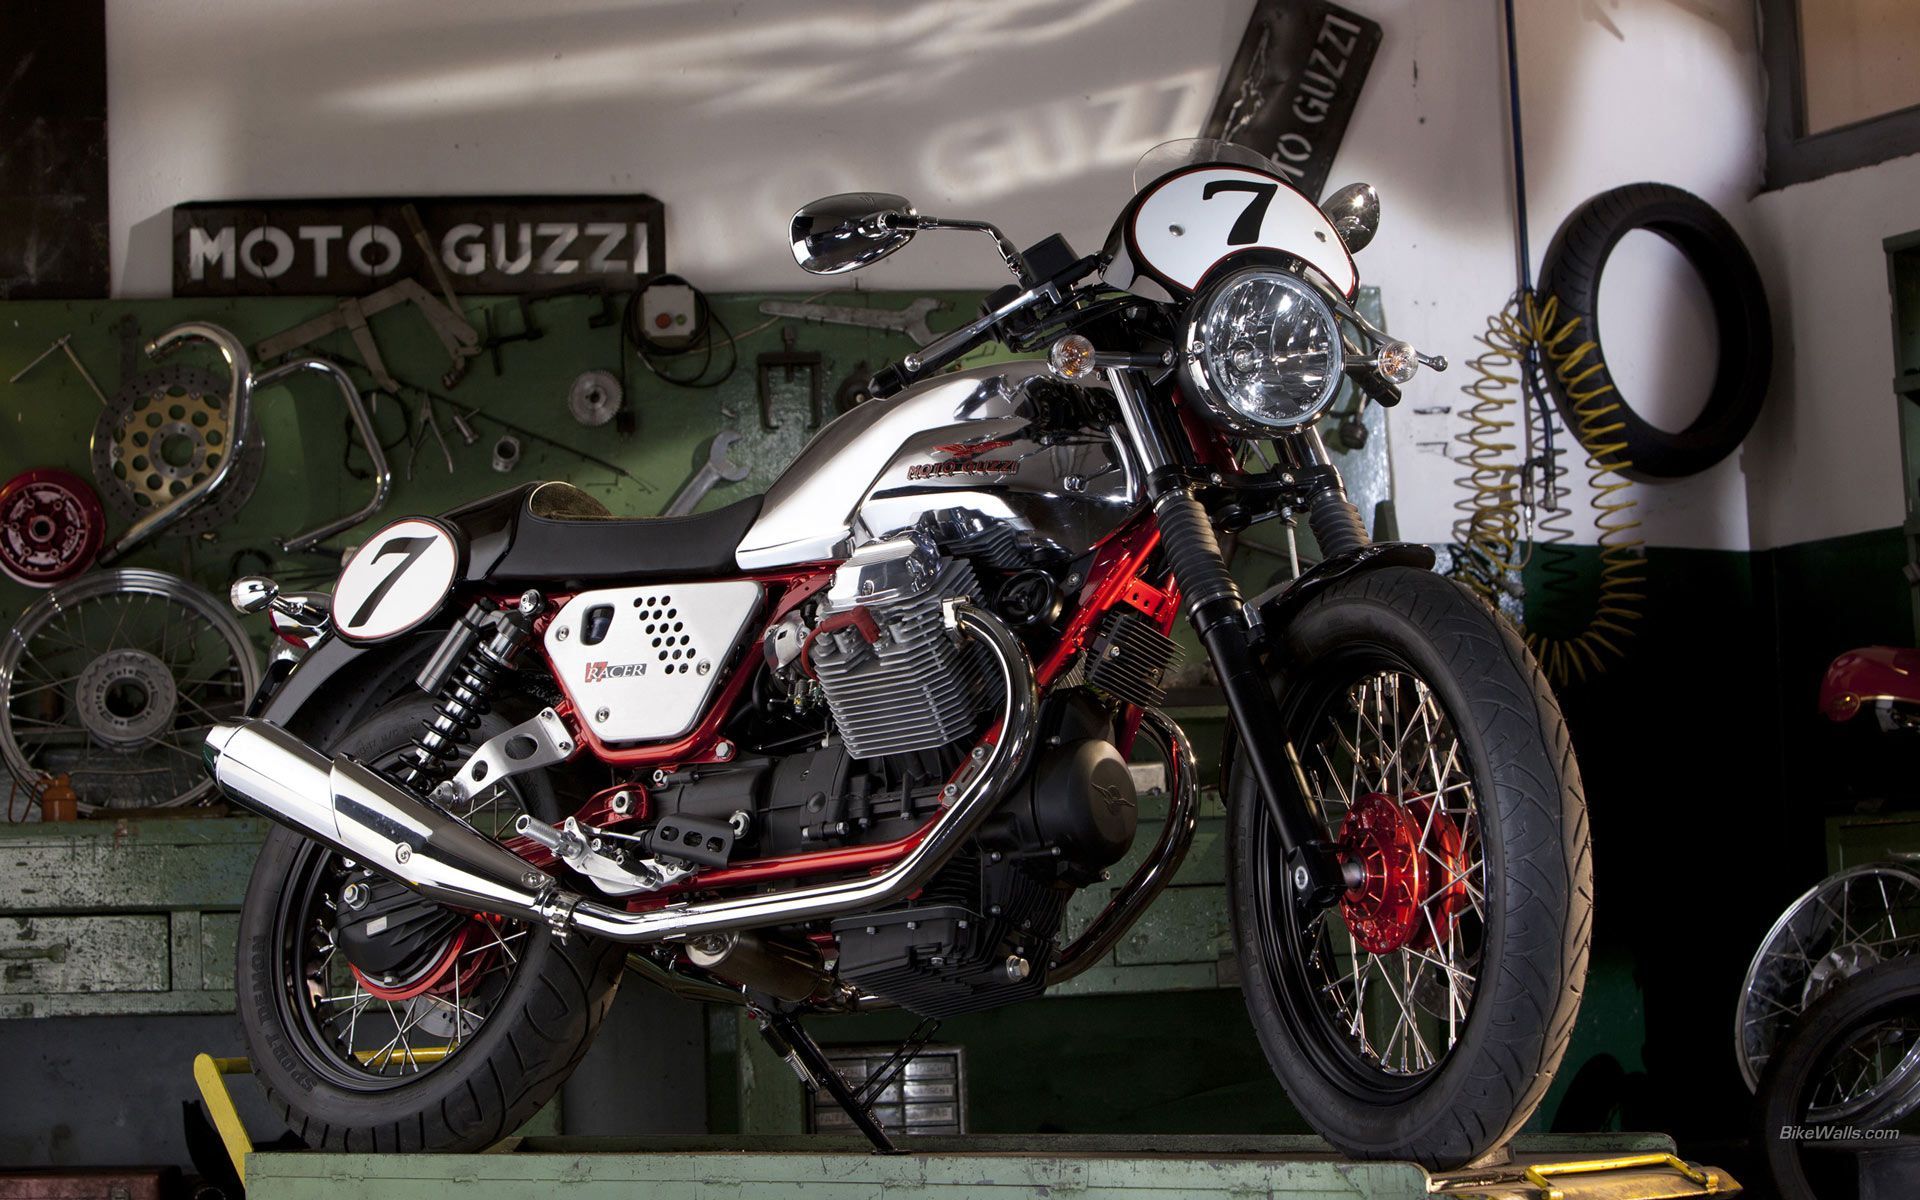 Moto Guzzi V7 Racer 1920 x 1200 wallpaper